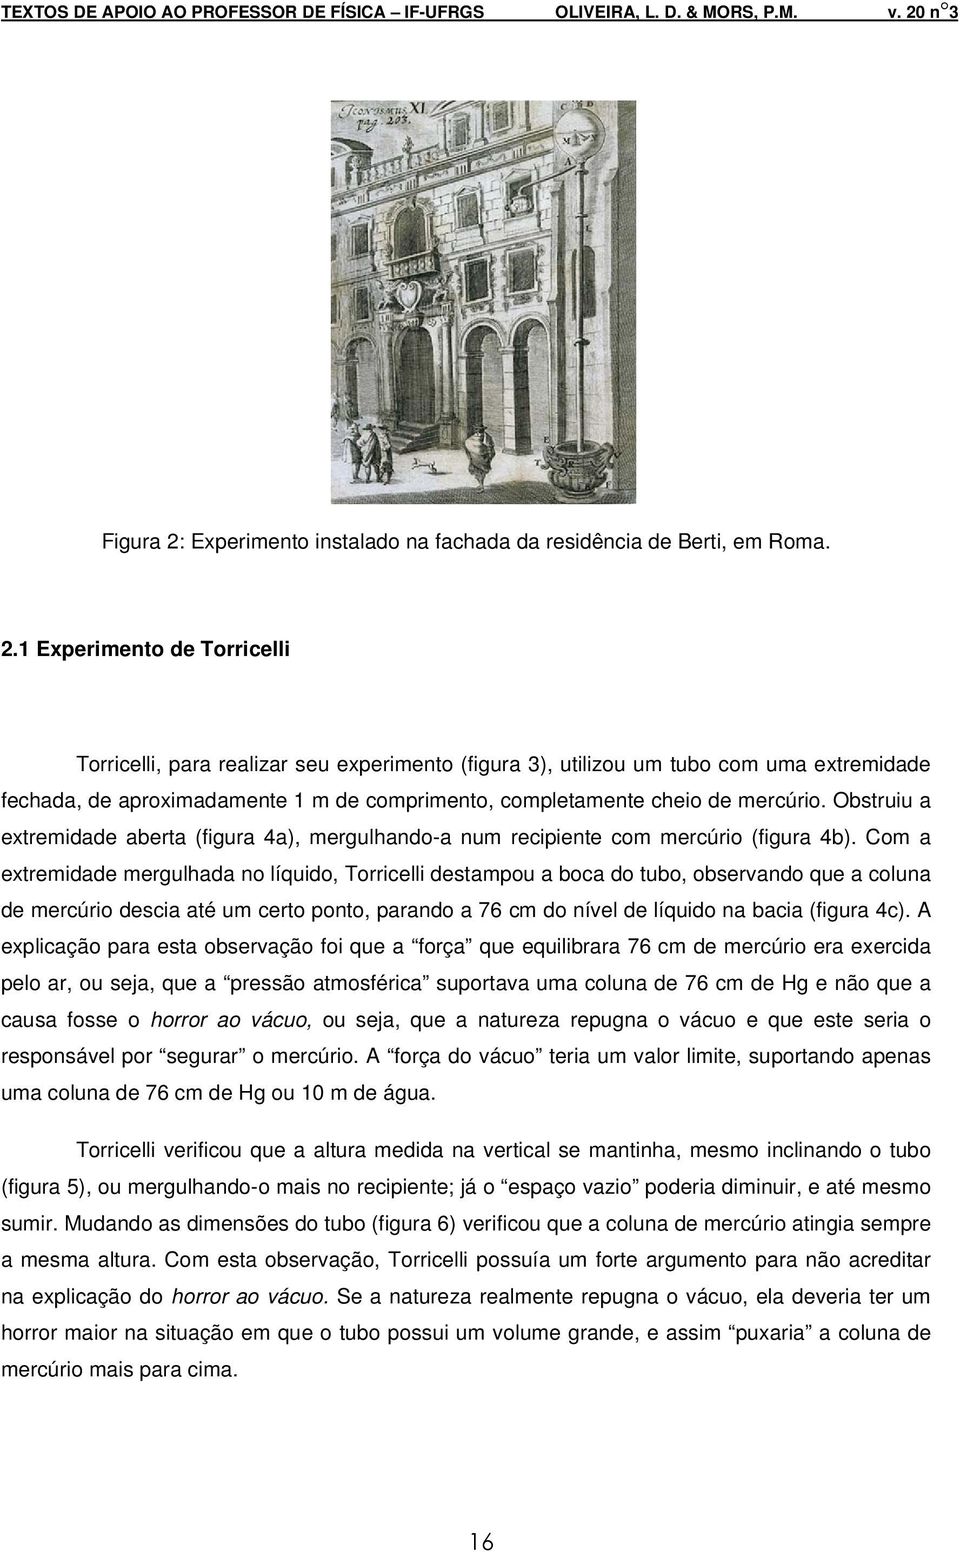 1 Experimento de Torricelli Torricelli, para realizar seu experimento (figura 3), utilizou um tubo com uma extremidade fechada, de aproximadamente 1 m de comprimento, completamente cheio de mercúrio.